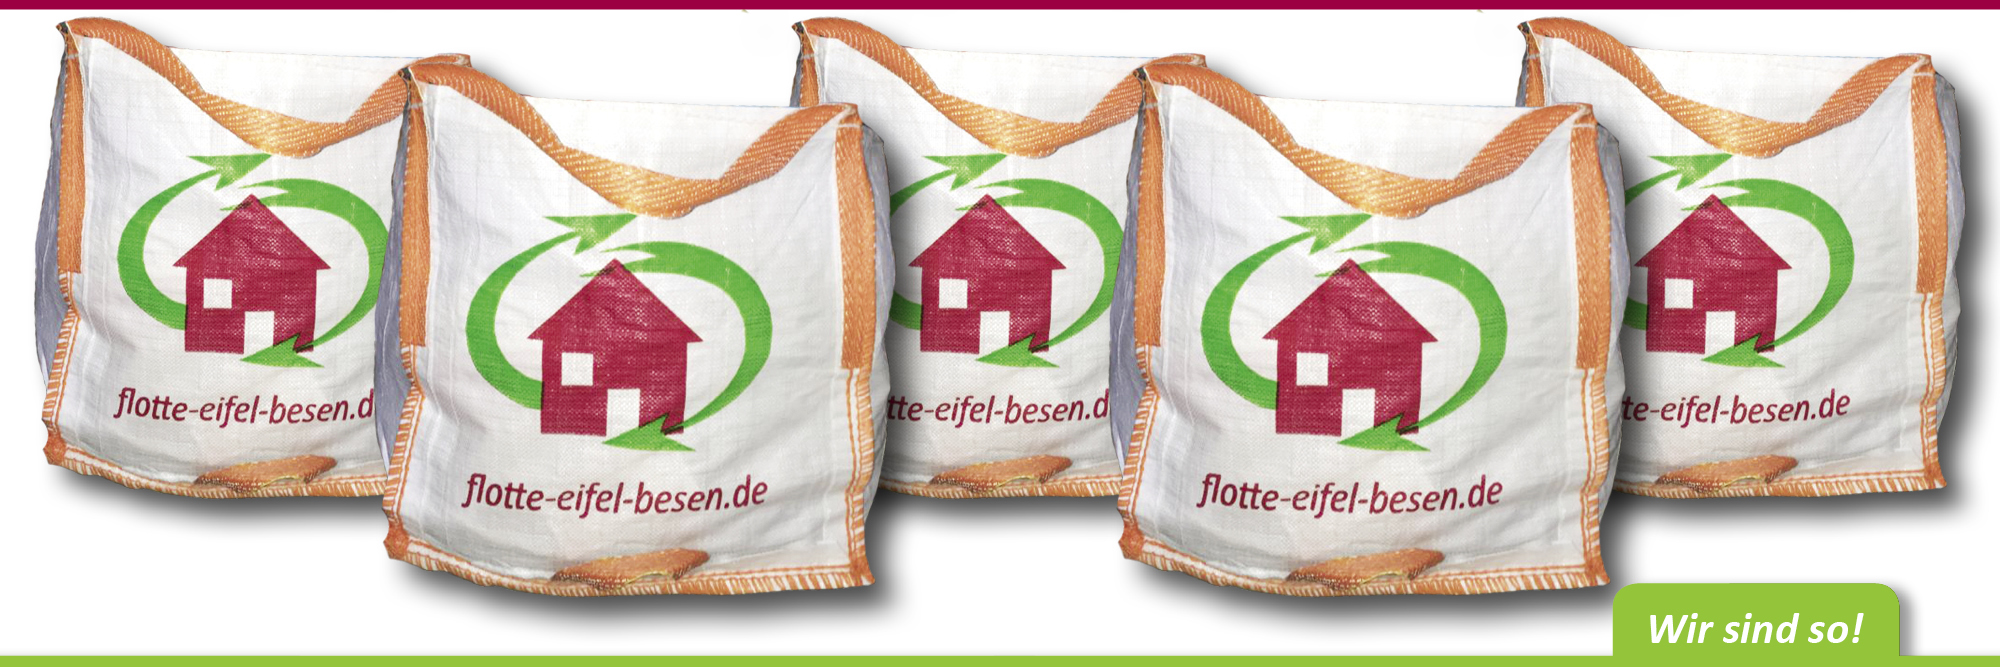 Big-Bags helfen Ordnung zu schaffen – flotte-eifel-besen.de